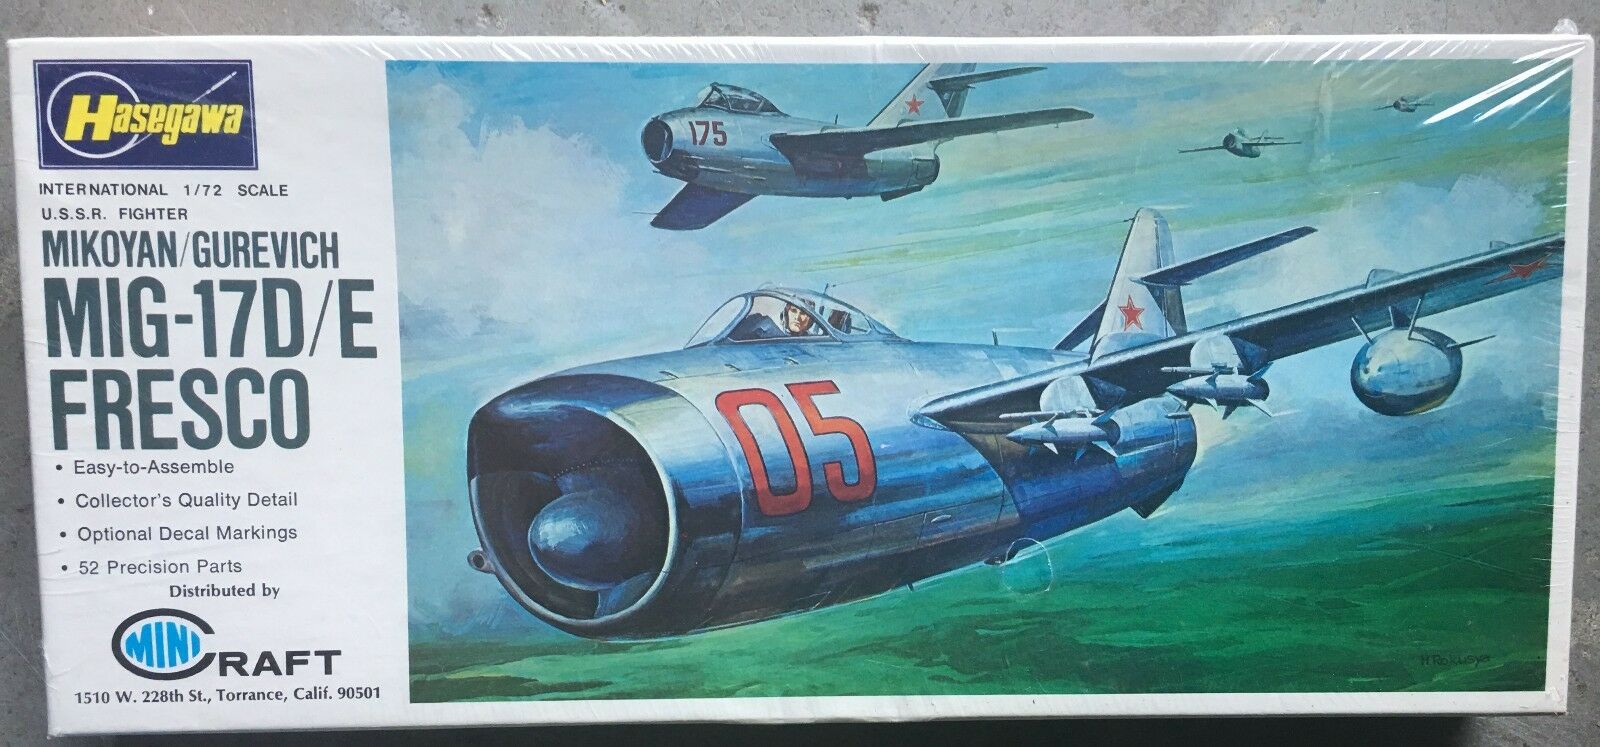 MiG-17D/E Fresco